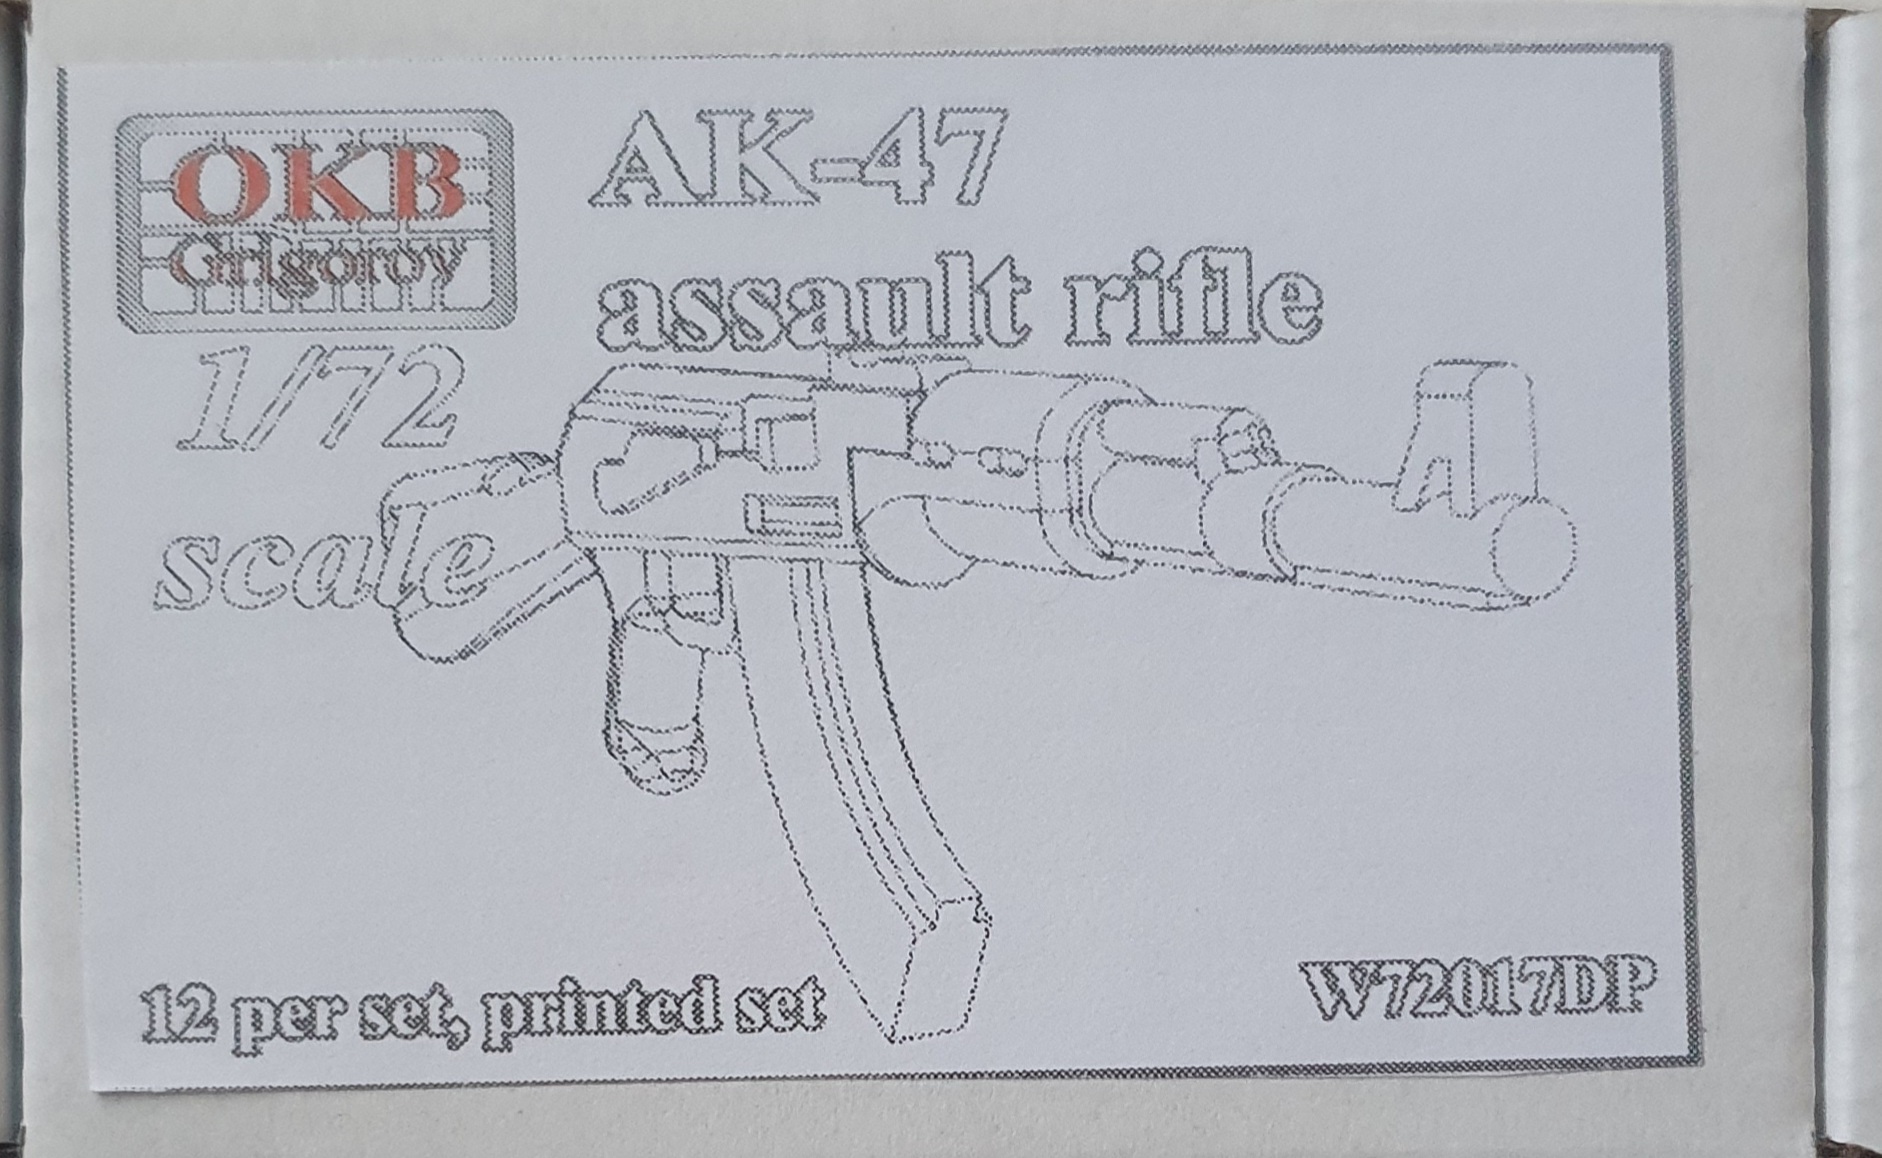 AK-47 (12pc)